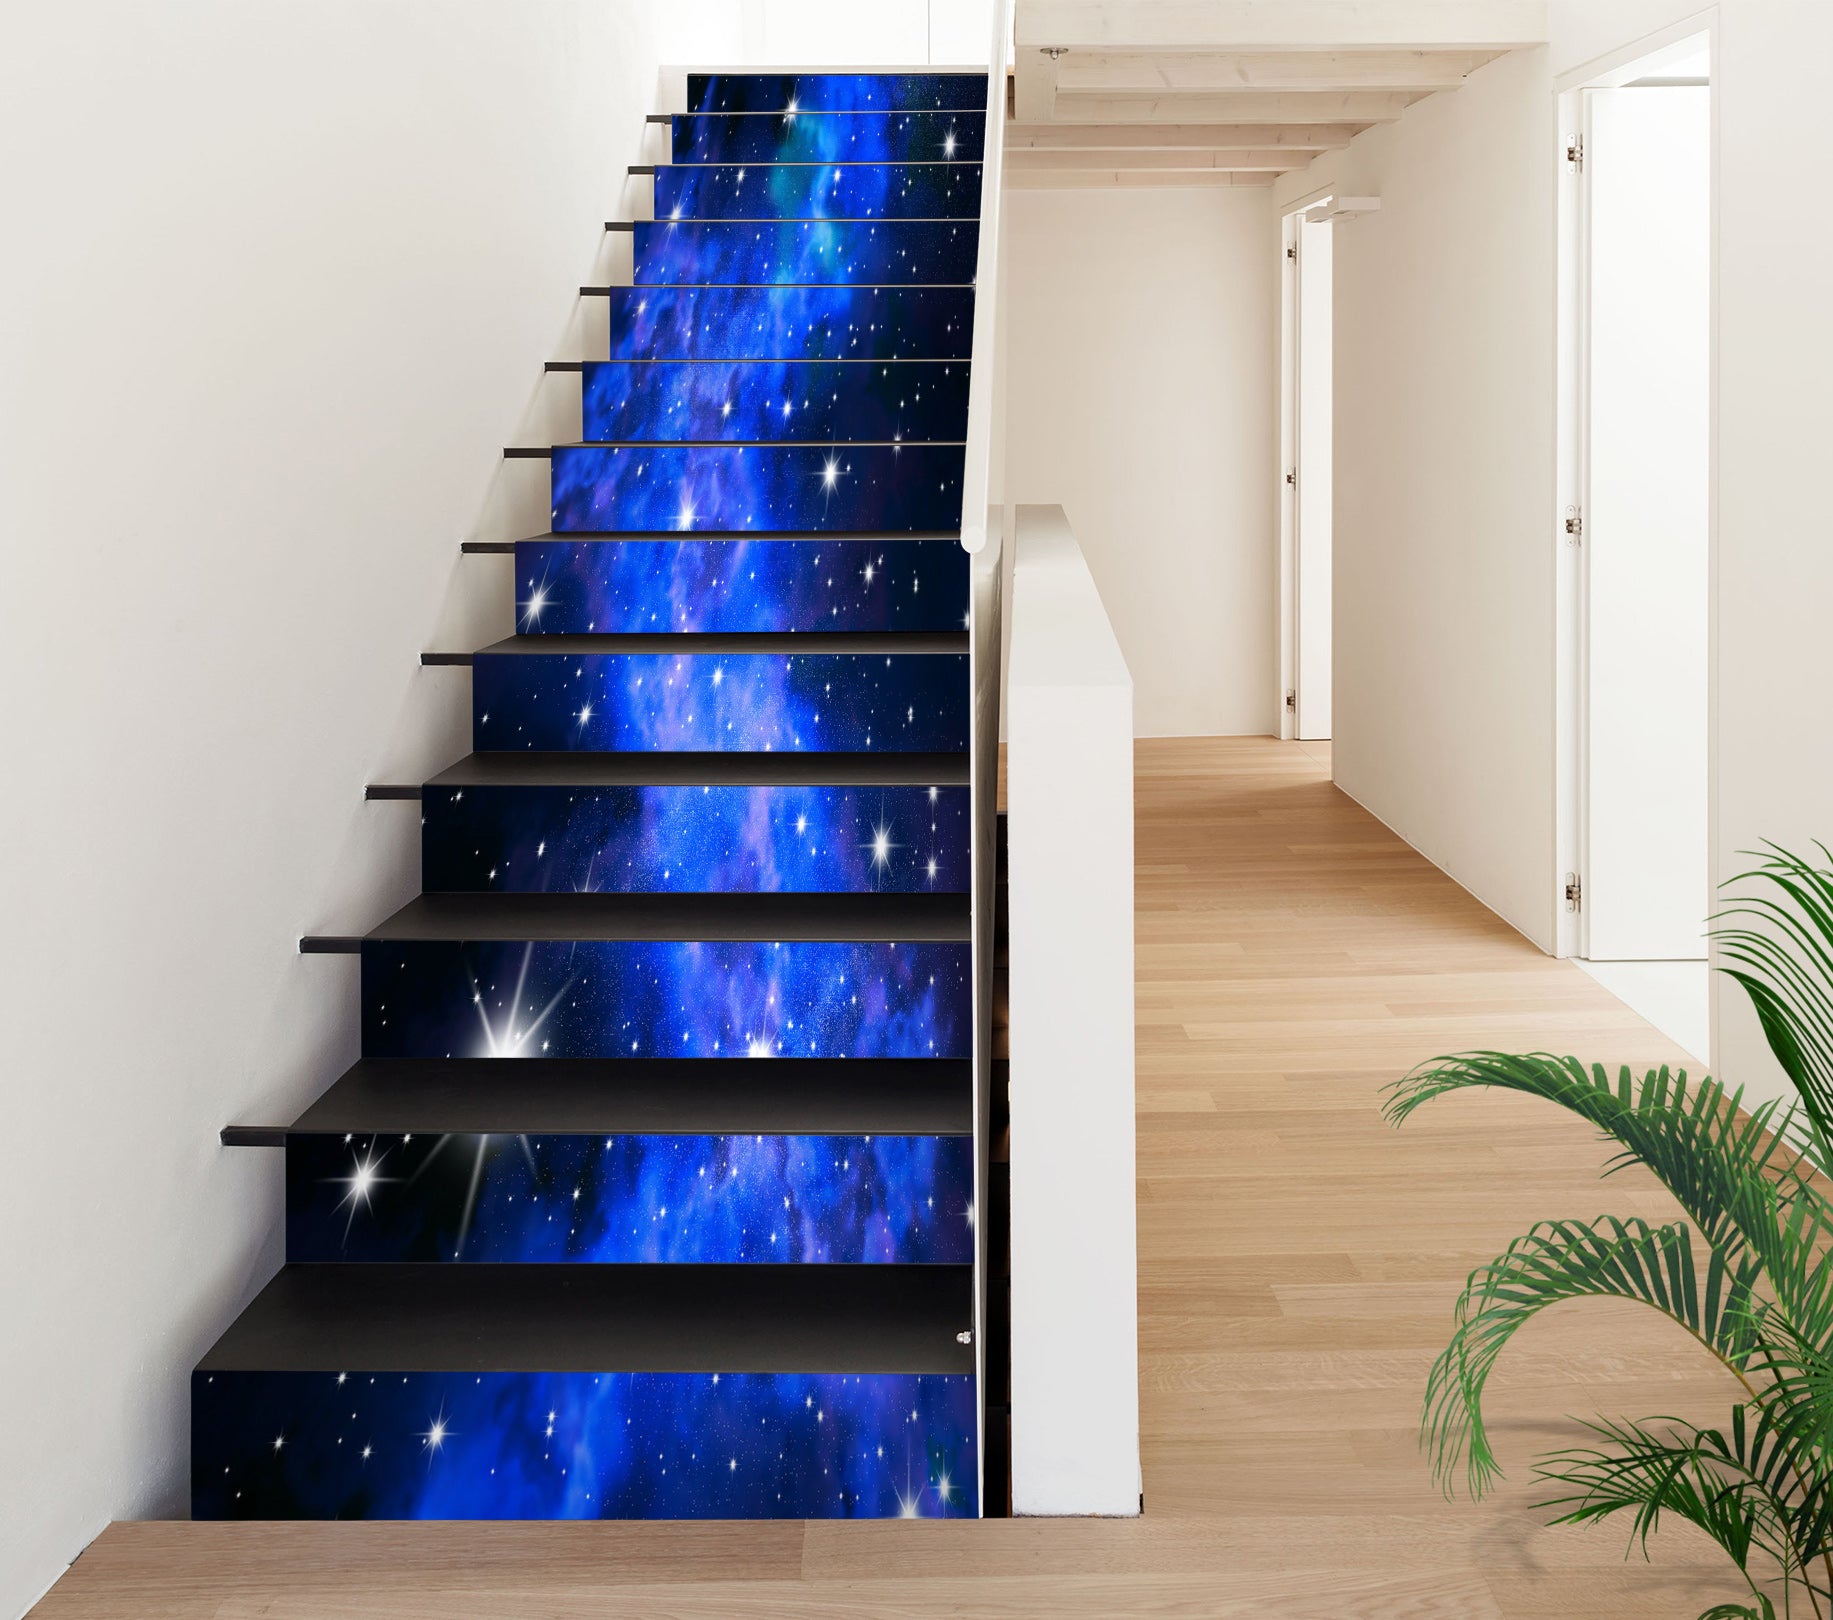 3D Deep Blue Galaxy 398 Stair Risers